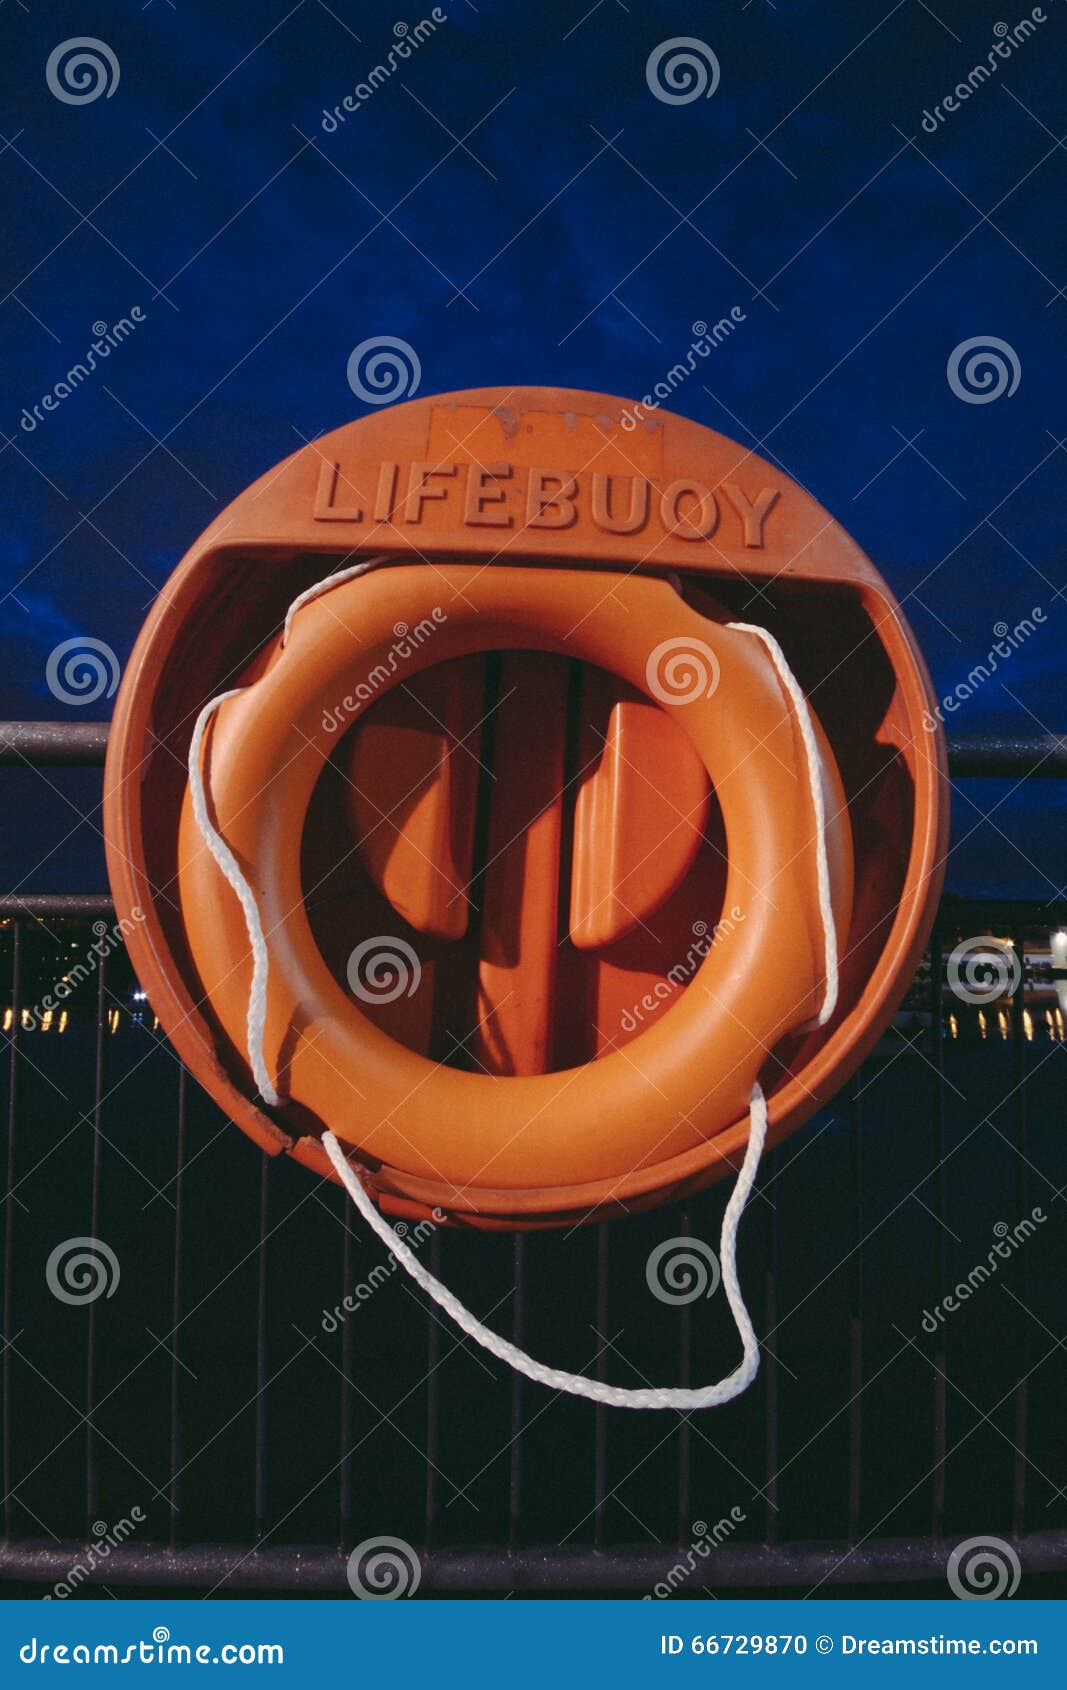 lifebuoy